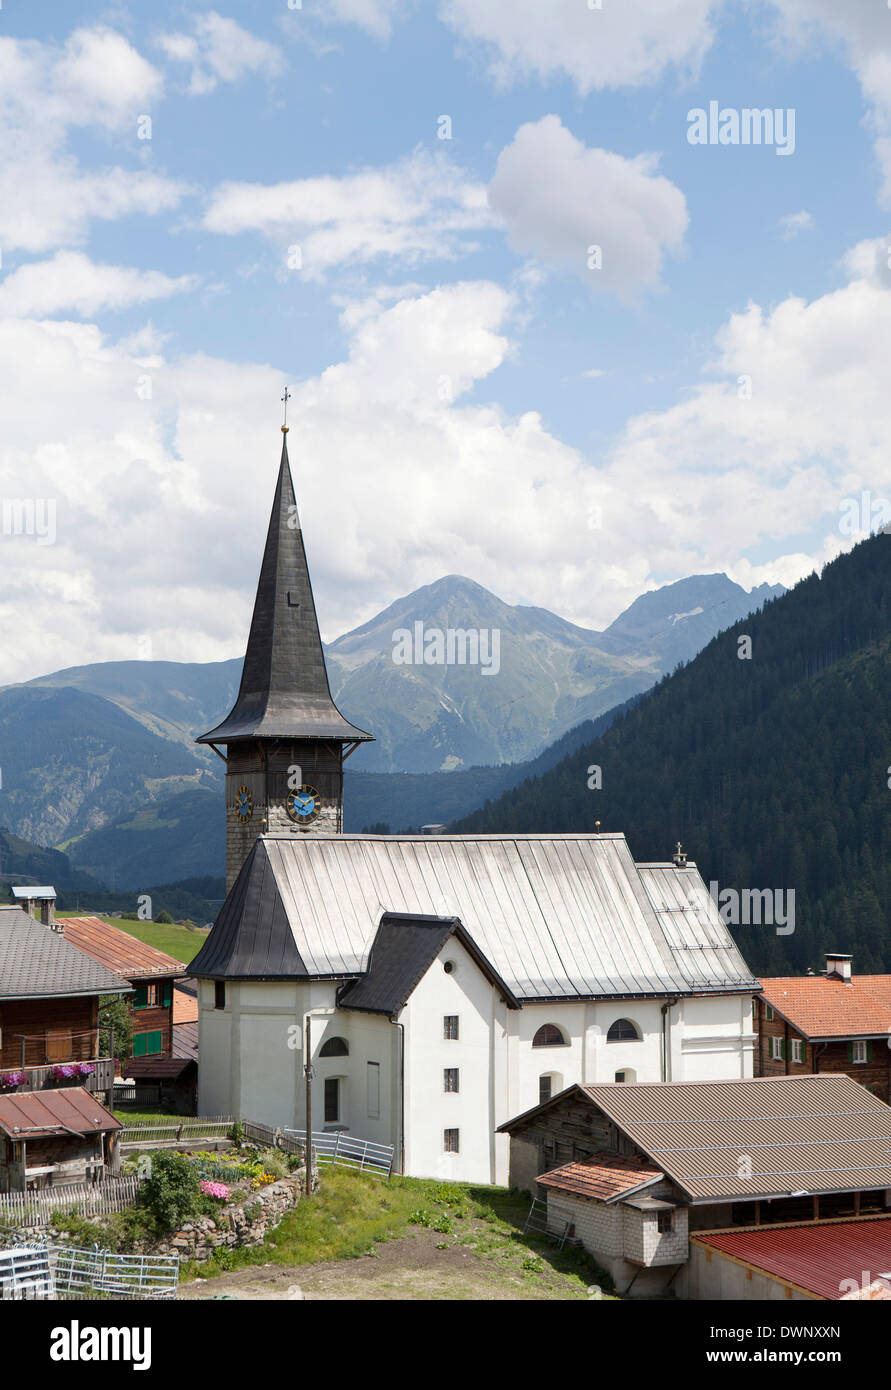 L'église du village de Saint Jakob, vallée de la Surselva, Rueras, Sedrun-Rueras, Canton des Grisons, Suisse Banque D'Images